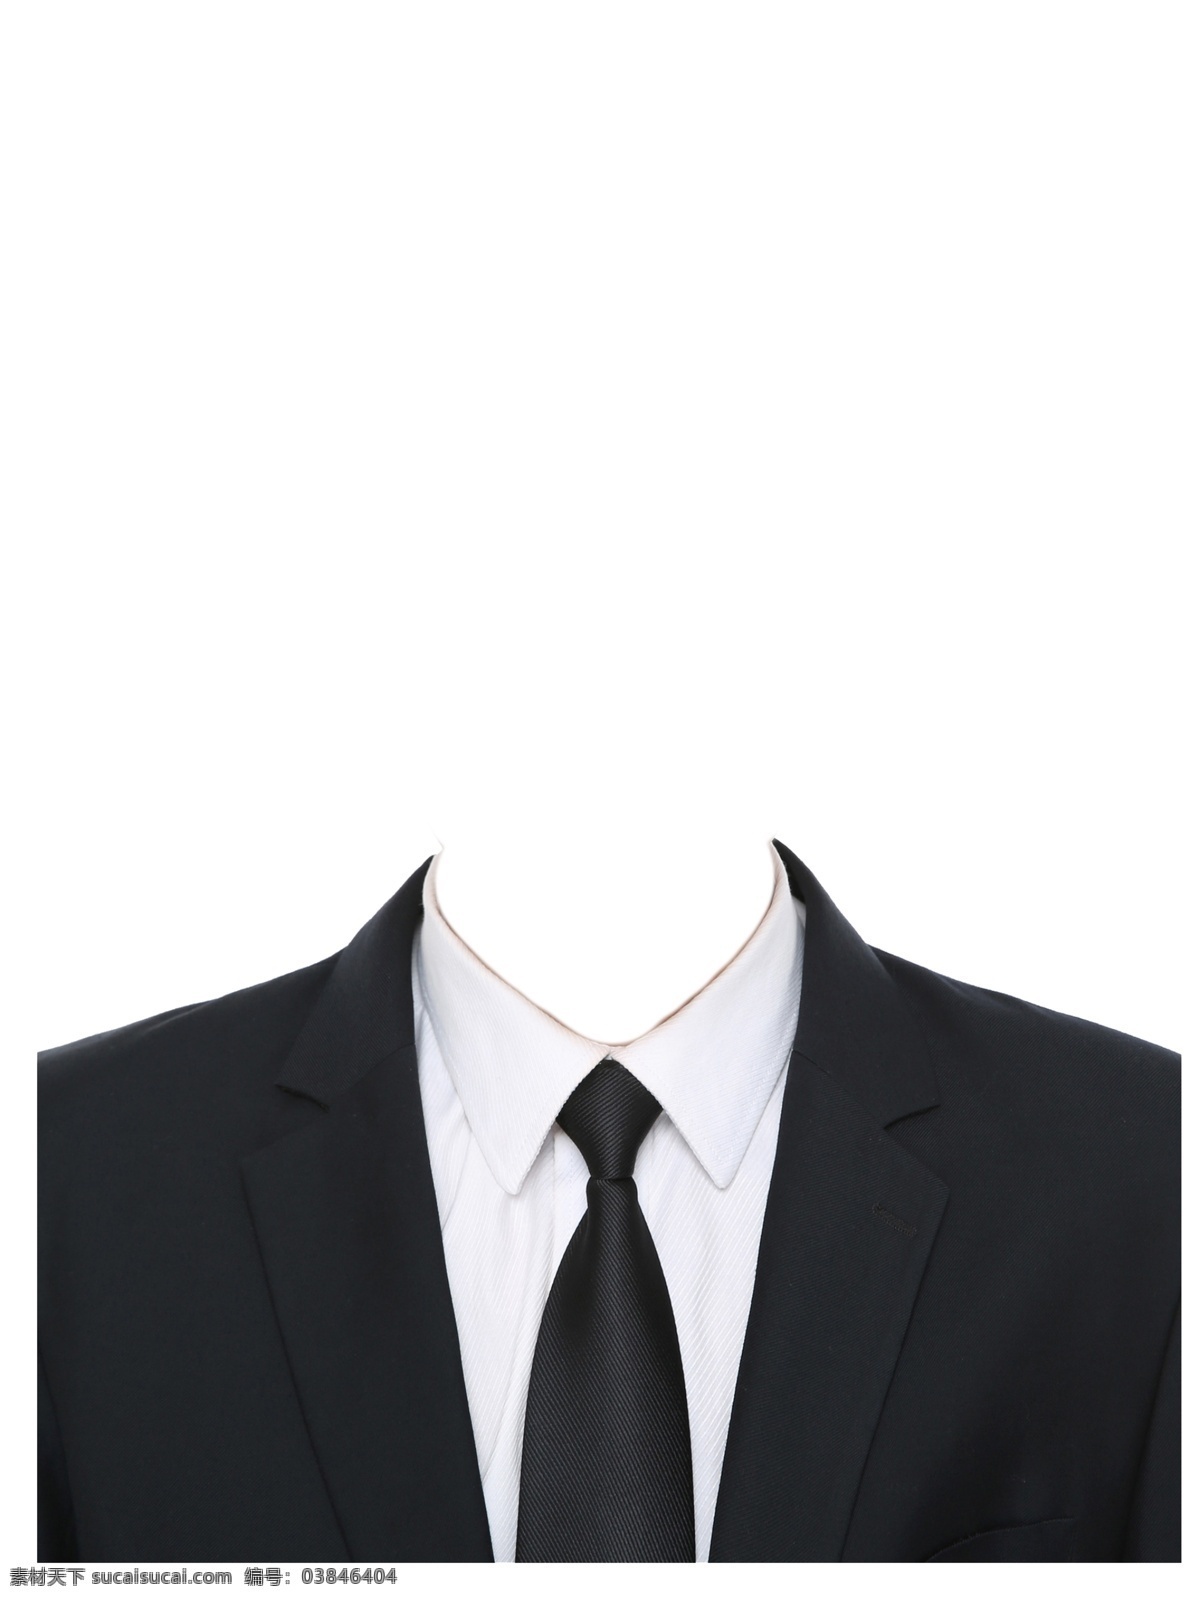 男士 西服 证件 证件照 白衬衣 黑领带 分层